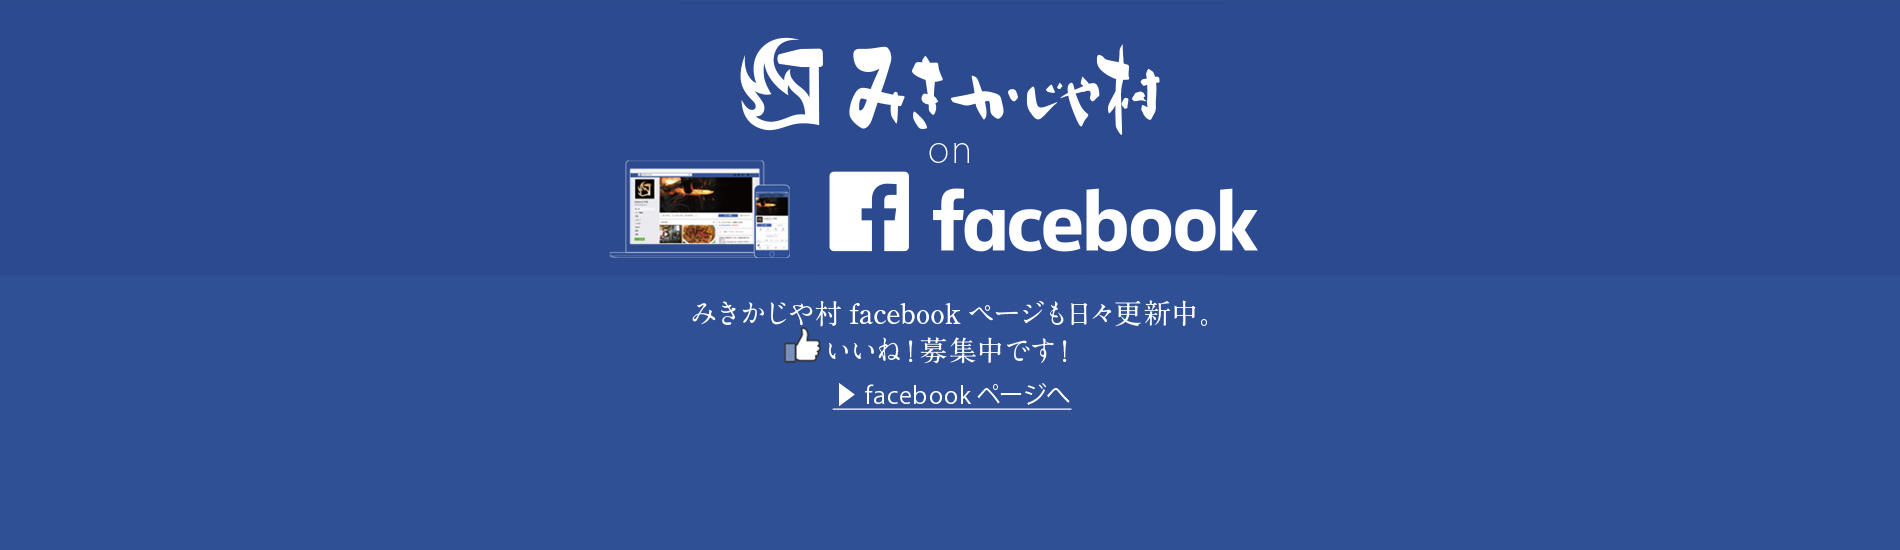 みきかじや村 facebookページ